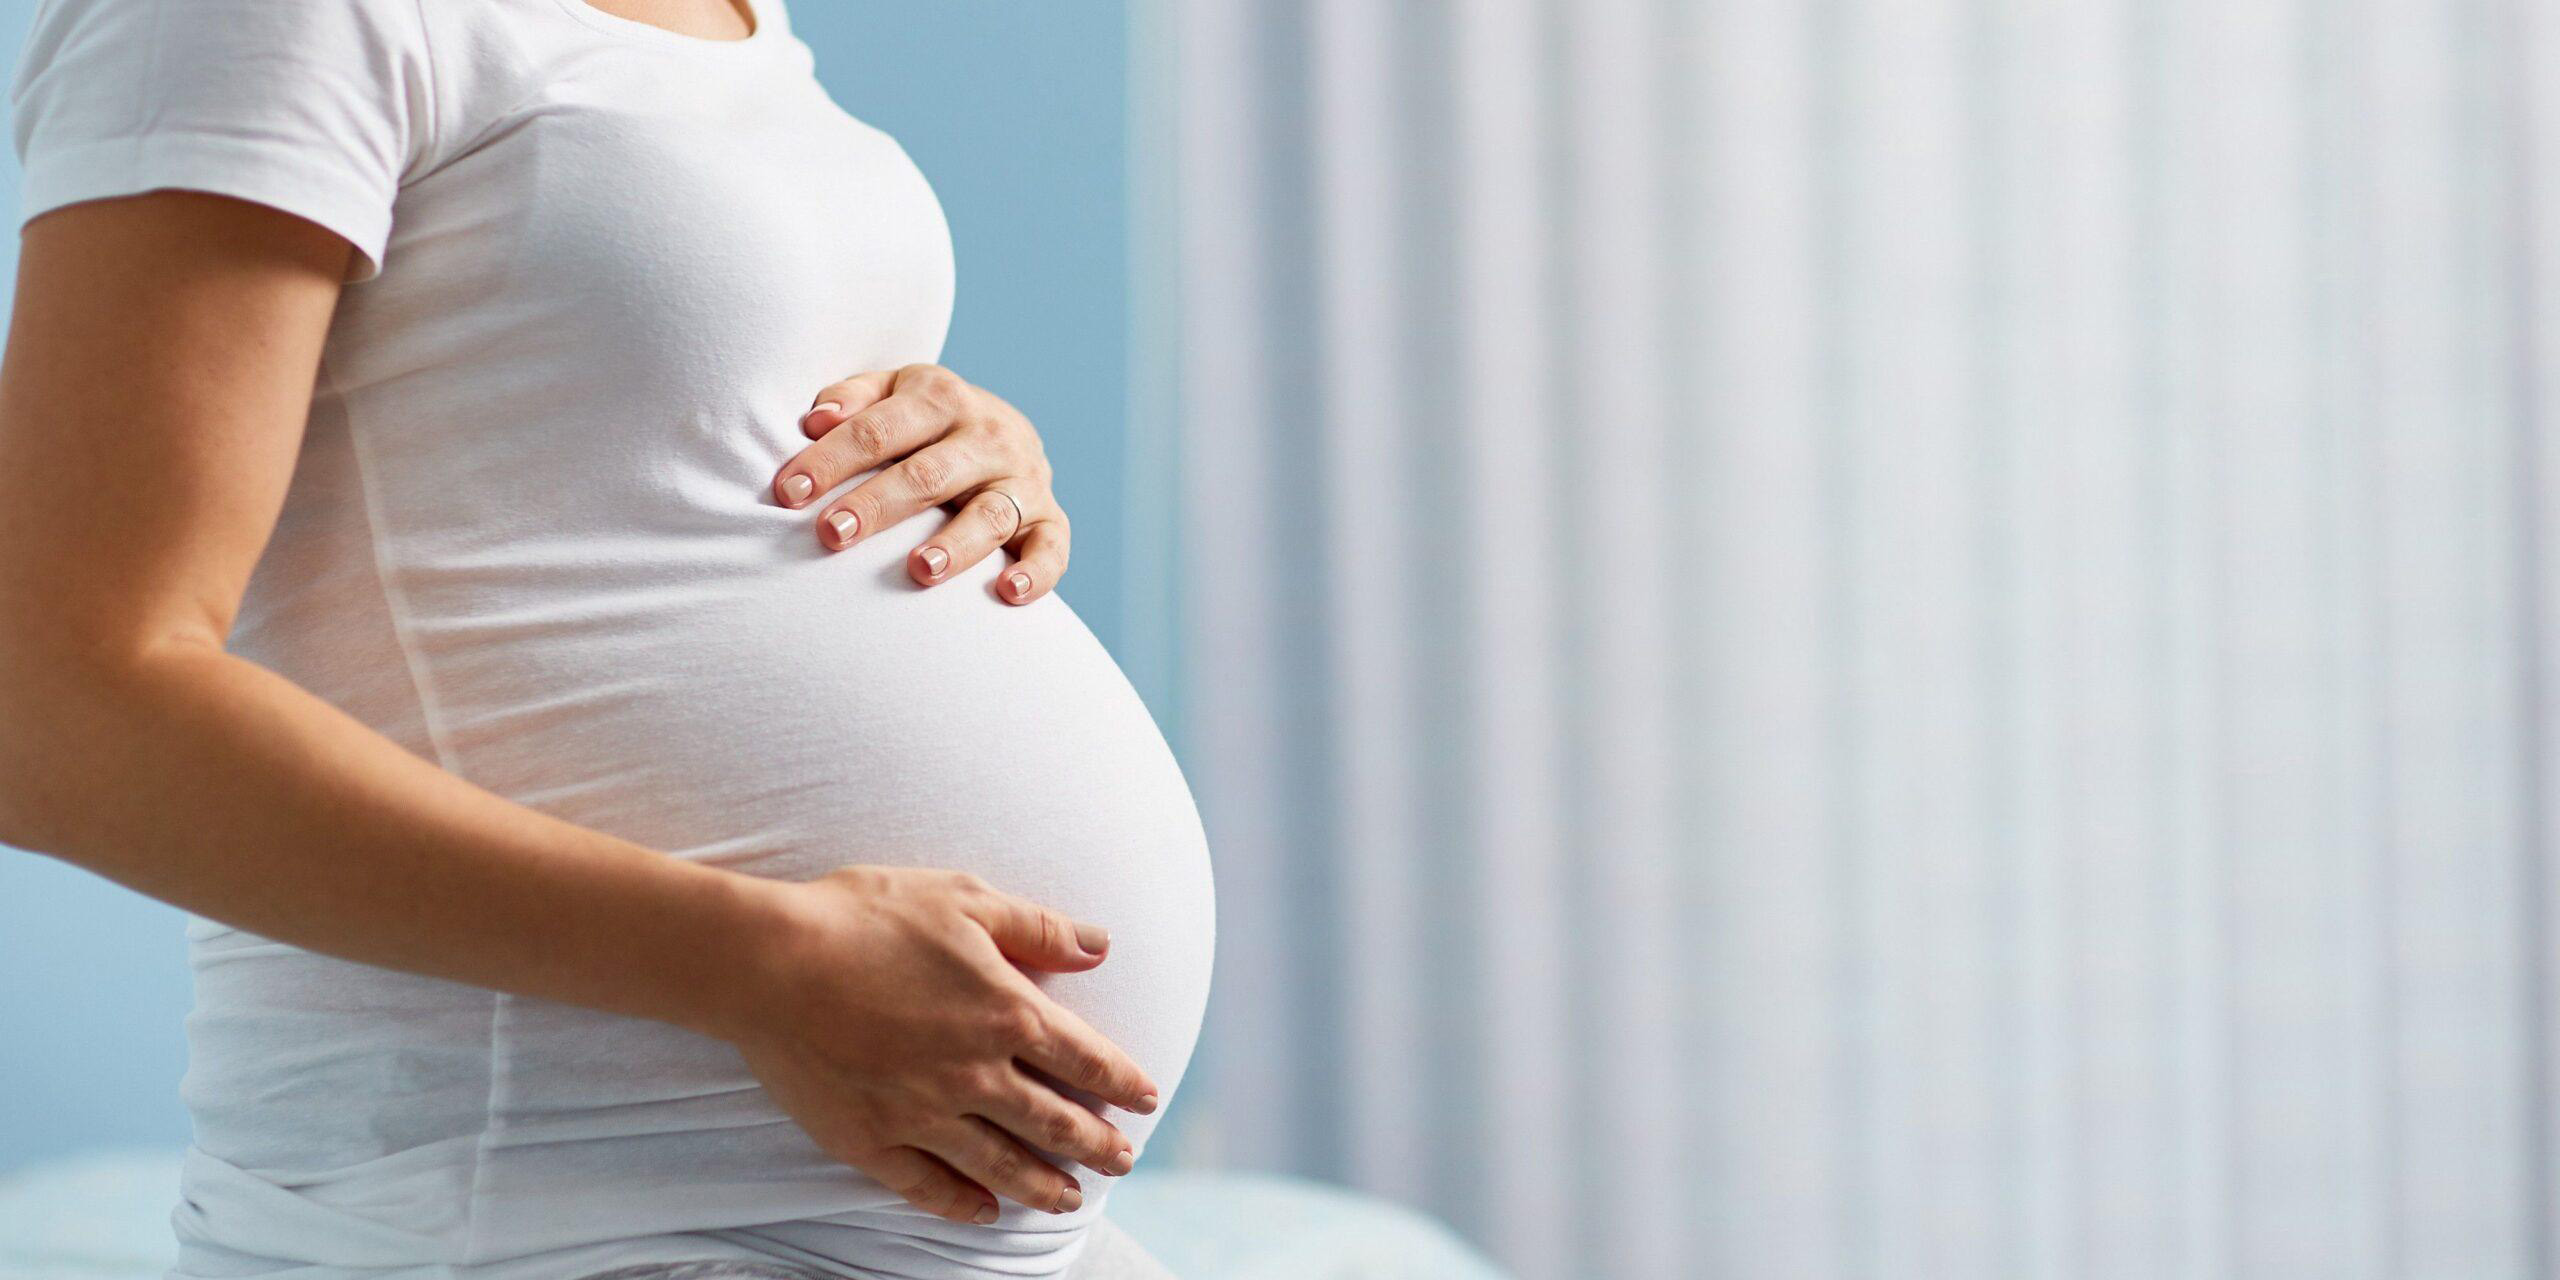 Могилевские медики рекомендуют беременным женщинам привиться против инфекции COVID-19, чтобы обезопасить себя и ребенка